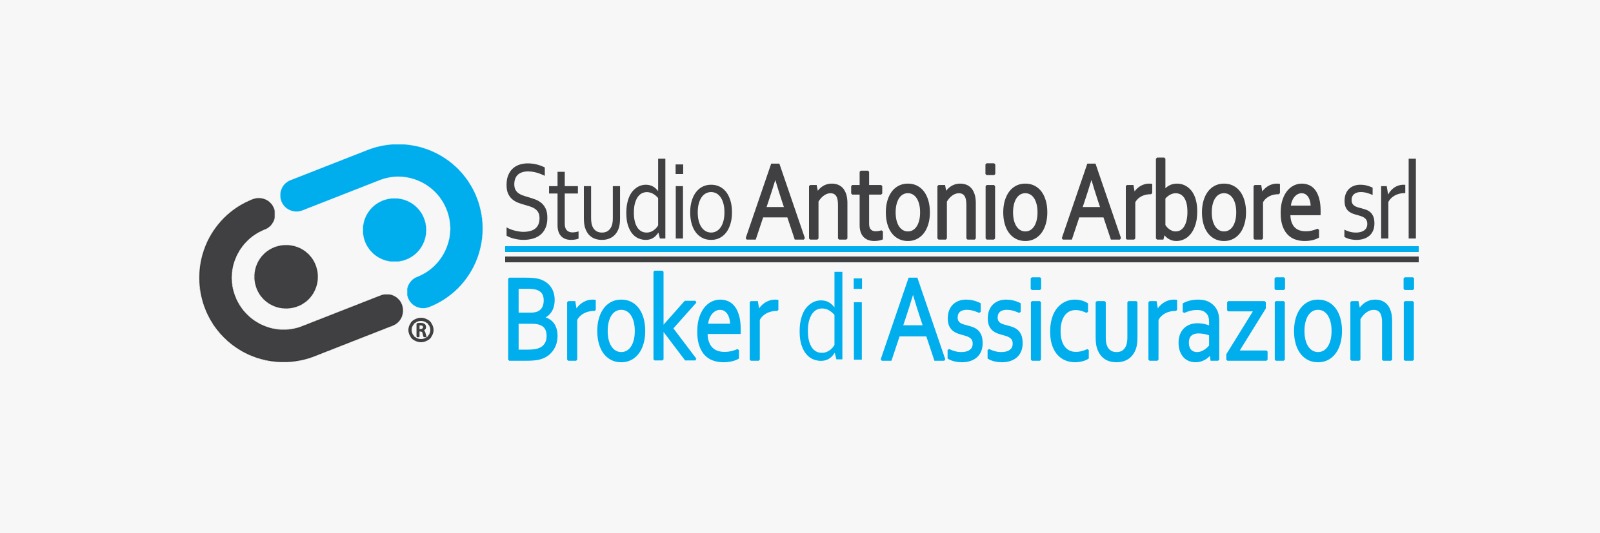 Studio Antonio Arbore Srl broker di assicurazioni